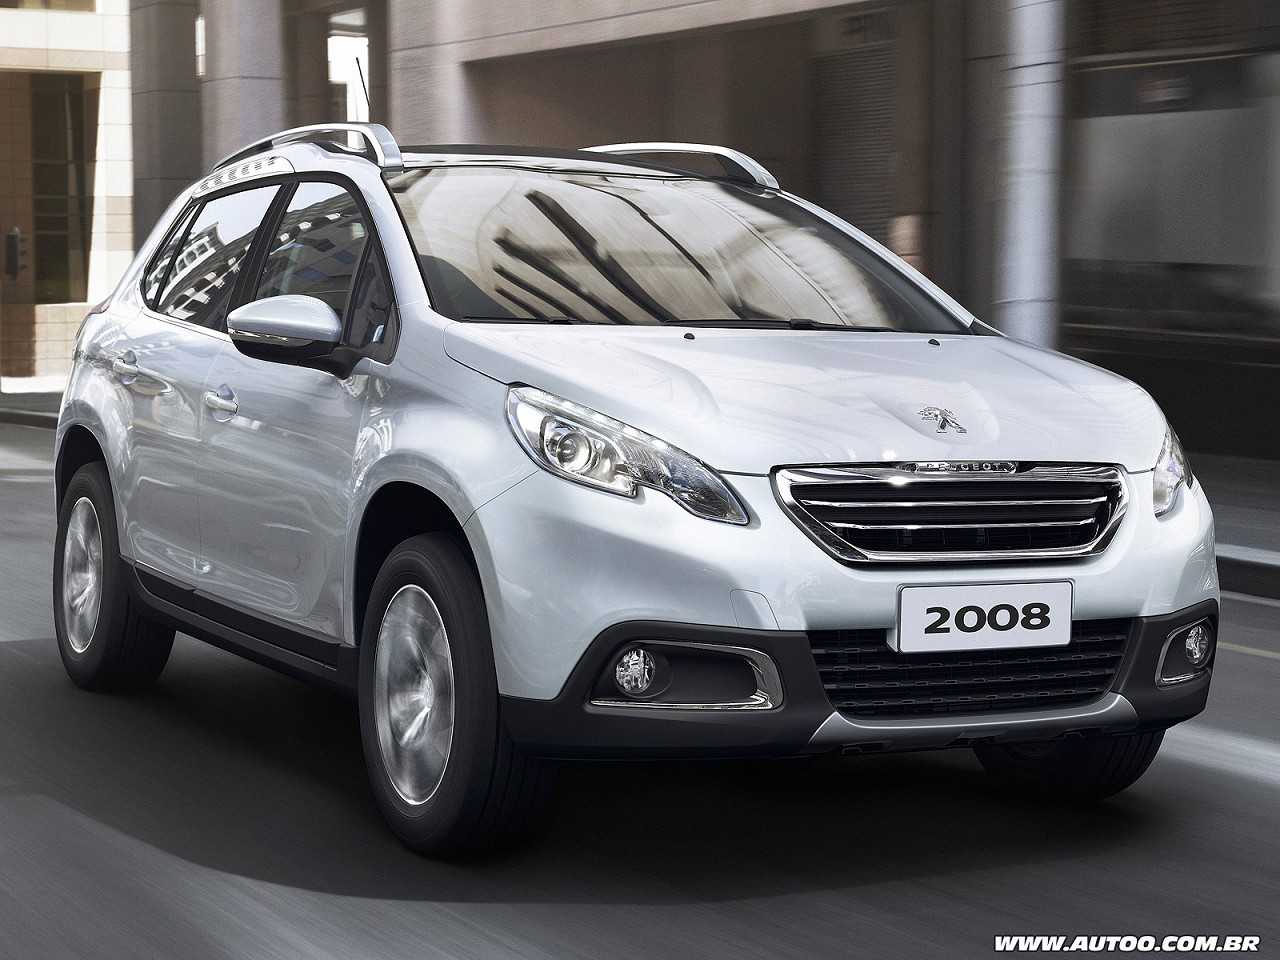 Compra com isenção: agora com o novo câmbio automático, o Peugeot 2008 é uma boa opção?